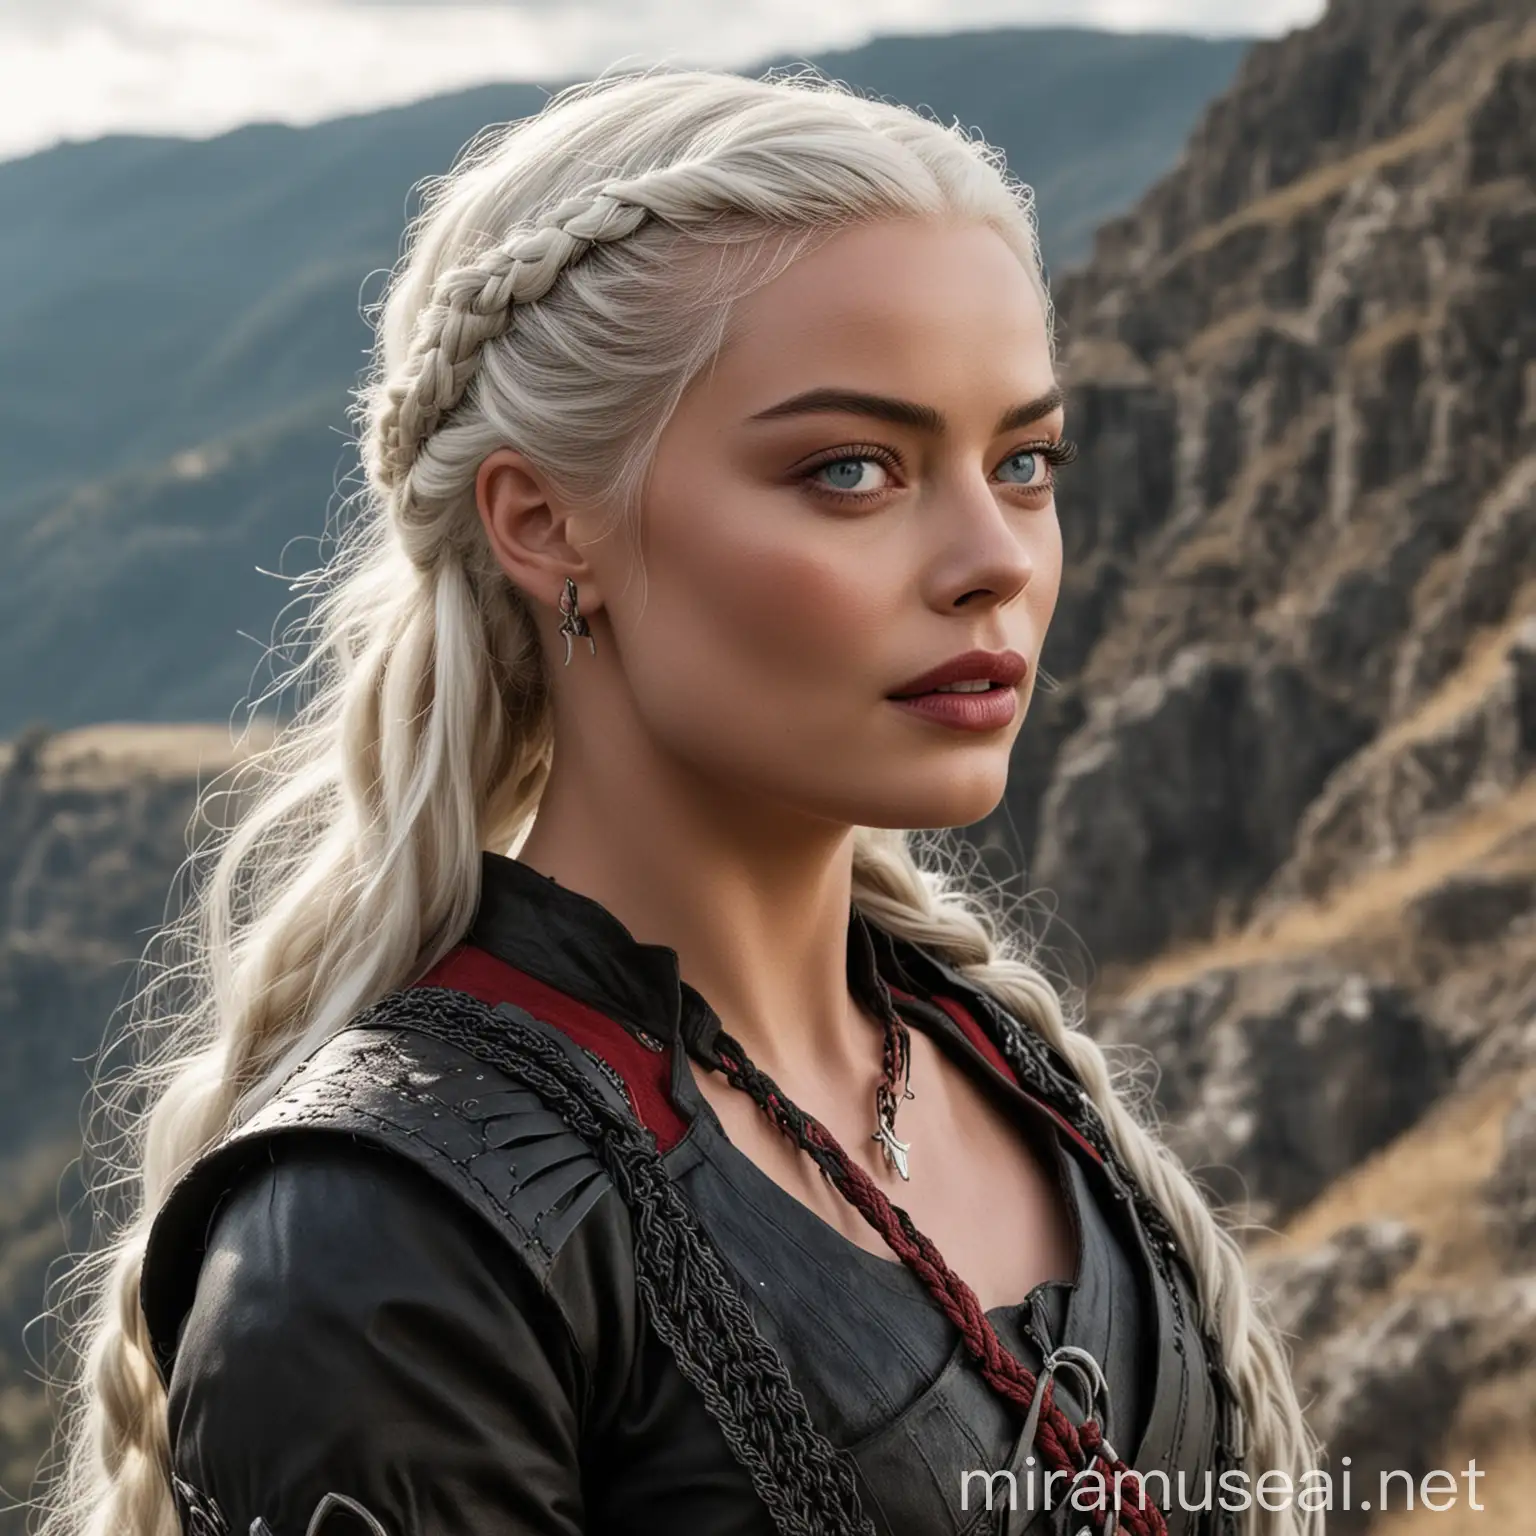 Margot Robbie en tant que princesse de la Maison Targaryen de l'Ancienne Valyria aux yeux clairs avec de longs cheveux blancs-argentés coiffés avec des tresses, portant une tenue noire et rouge typiquement Targaryen, marchant sur une pente ensoleillée d'une montagne